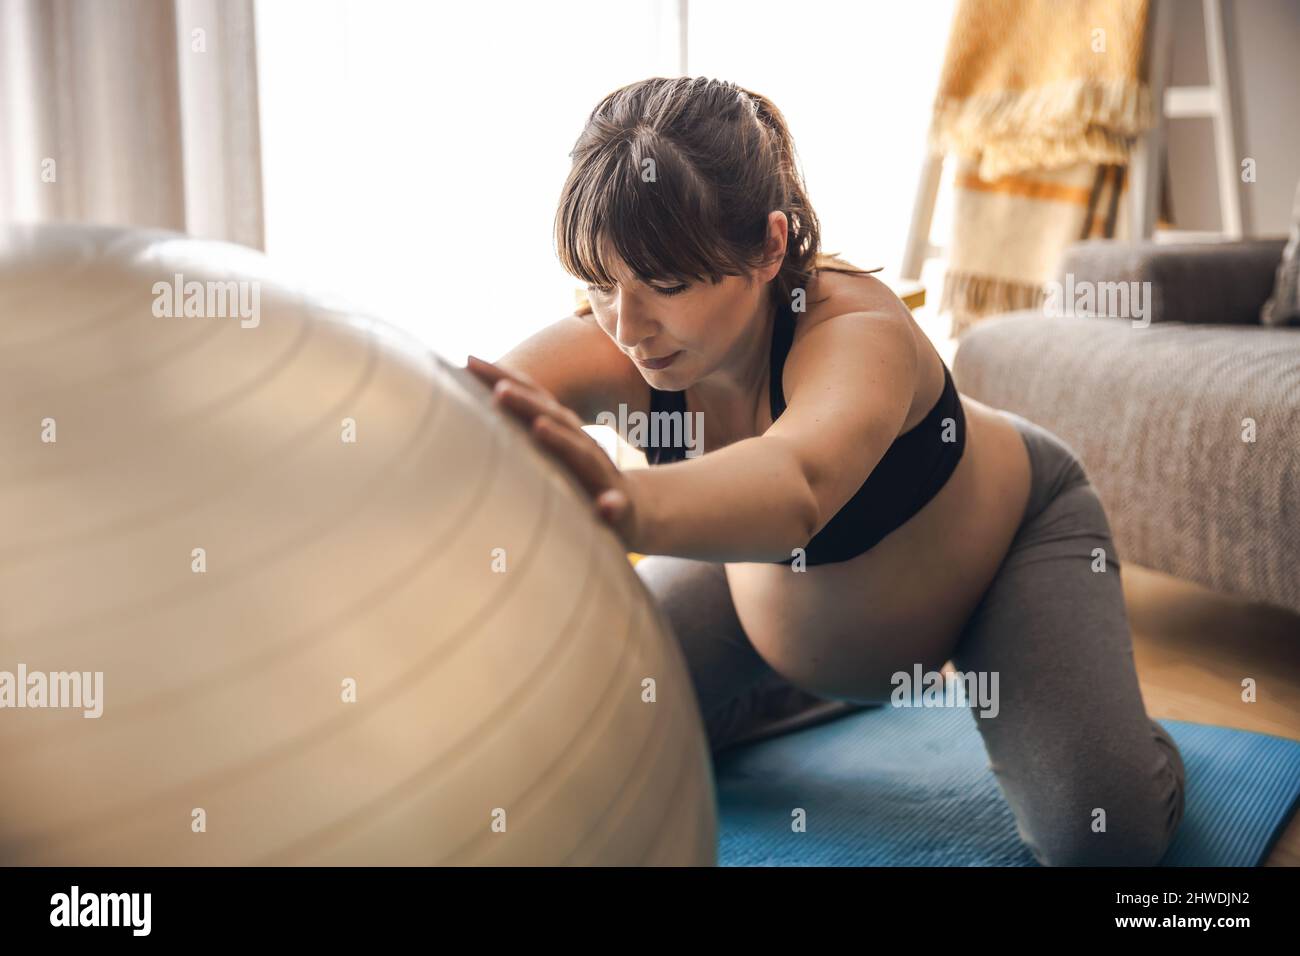 Femme enceinte travaillant à la maison faisant des exercices sur un fitball. Garder la forme tout en attendant bébé Banque D'Images